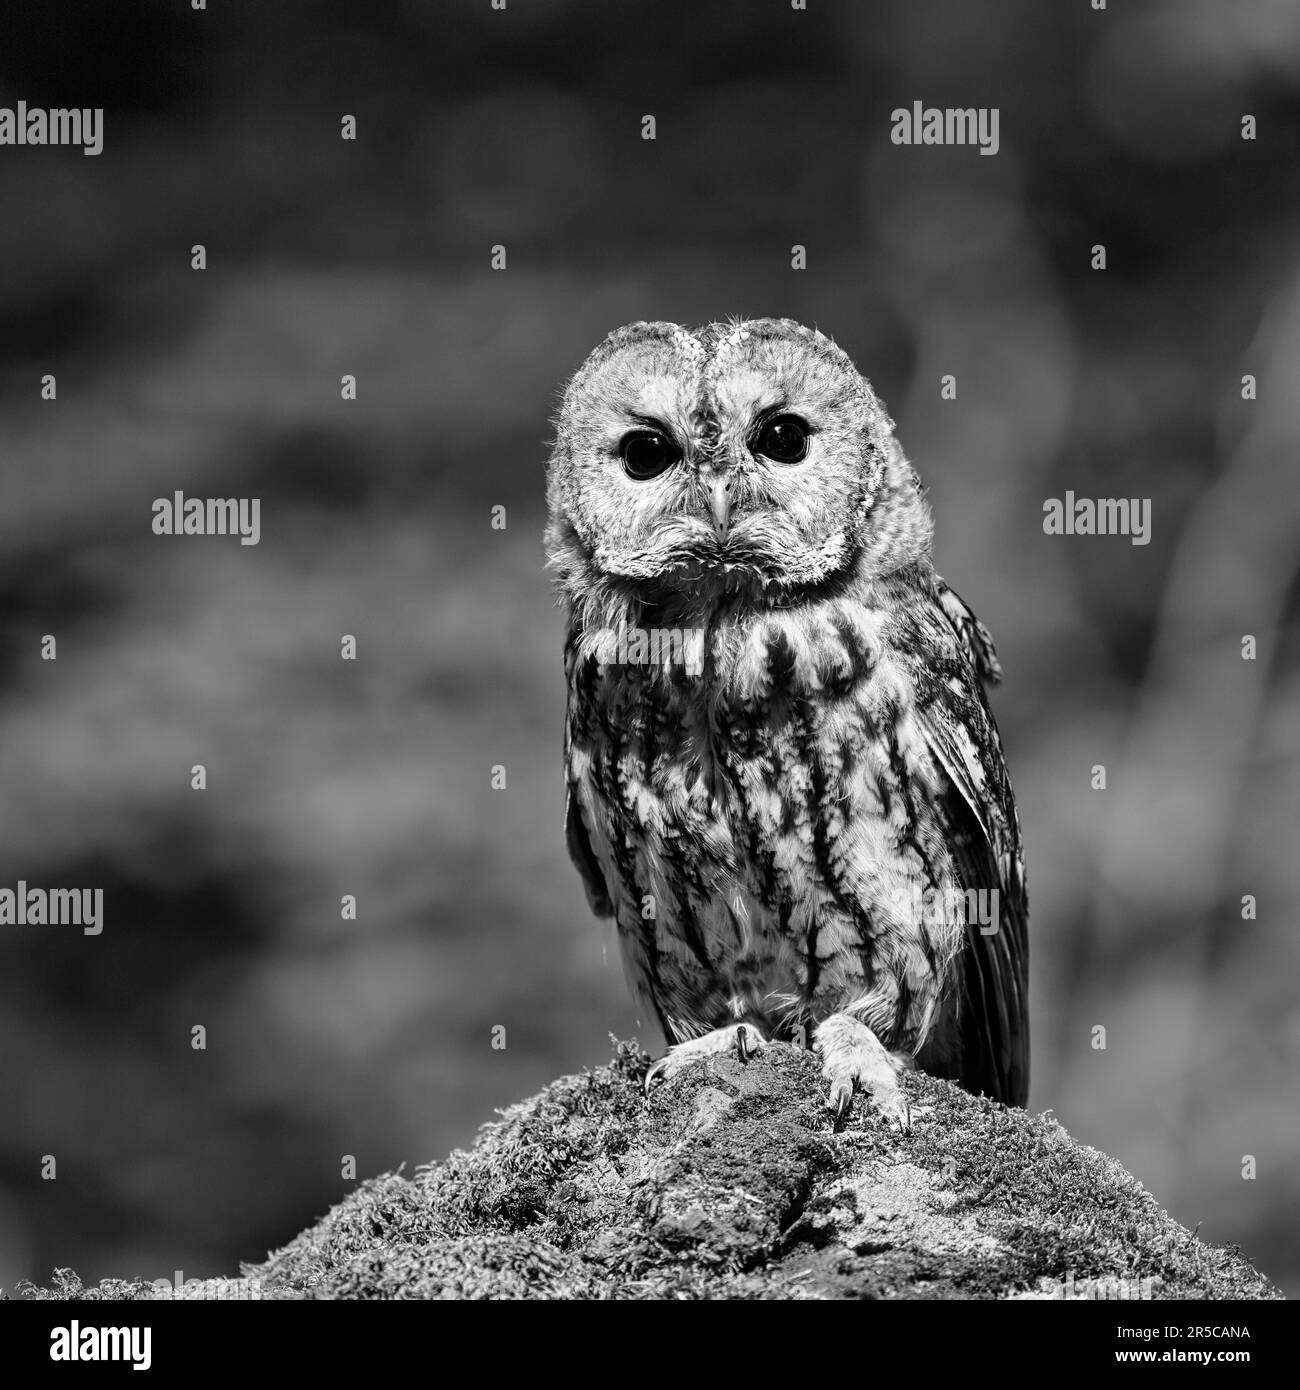 Tawny owl (Strix aluco), portrait, monochrome, Eifel, Germany Stock Photo